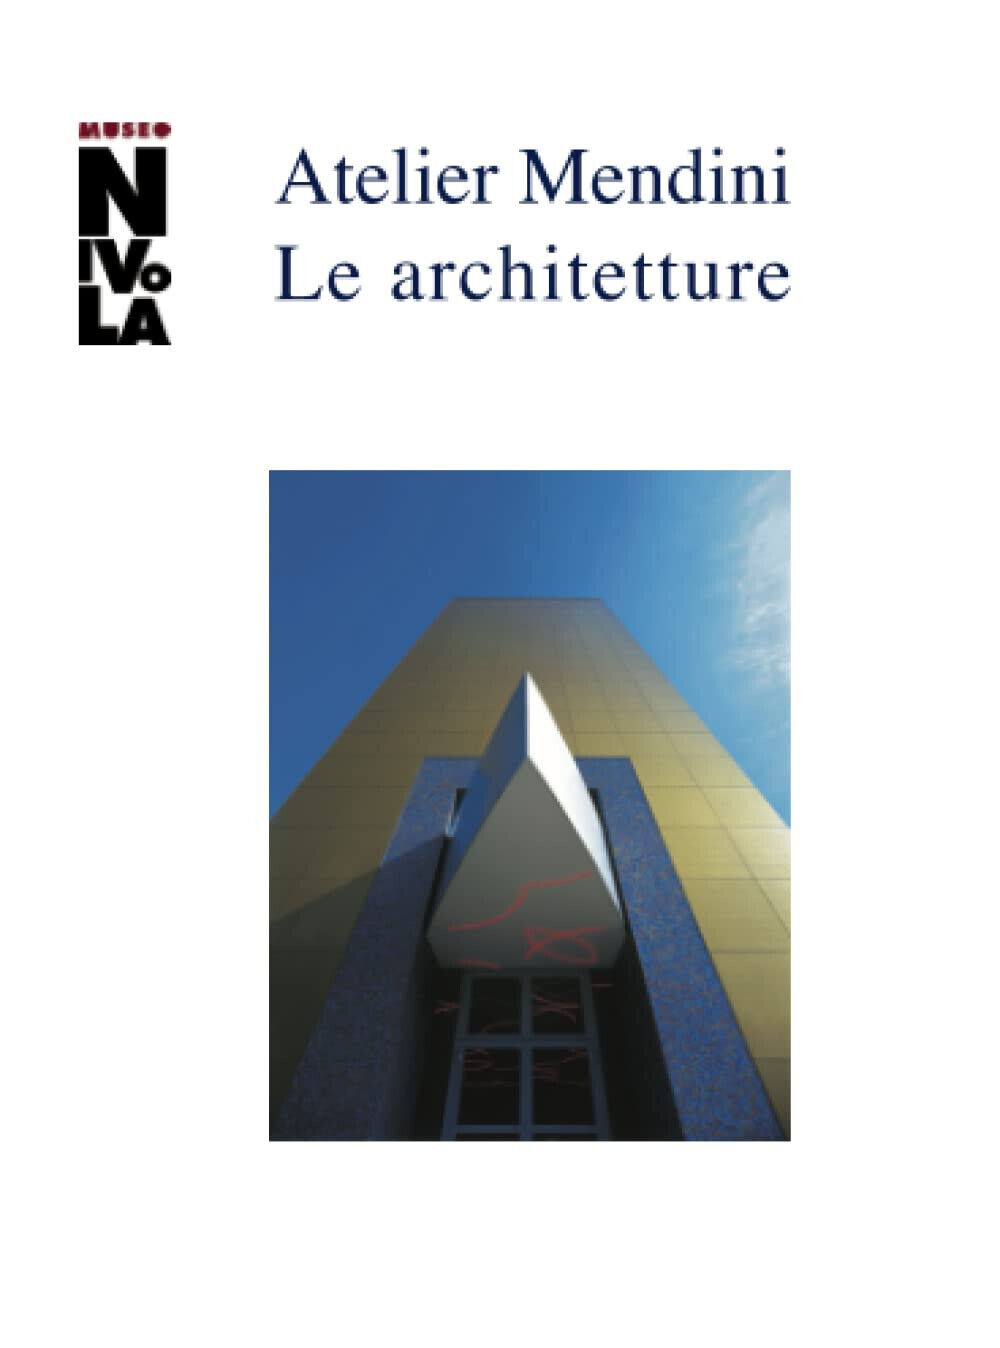 Atelier Mendini. Le architetture - A. Colonetti - Postmedia , 2019